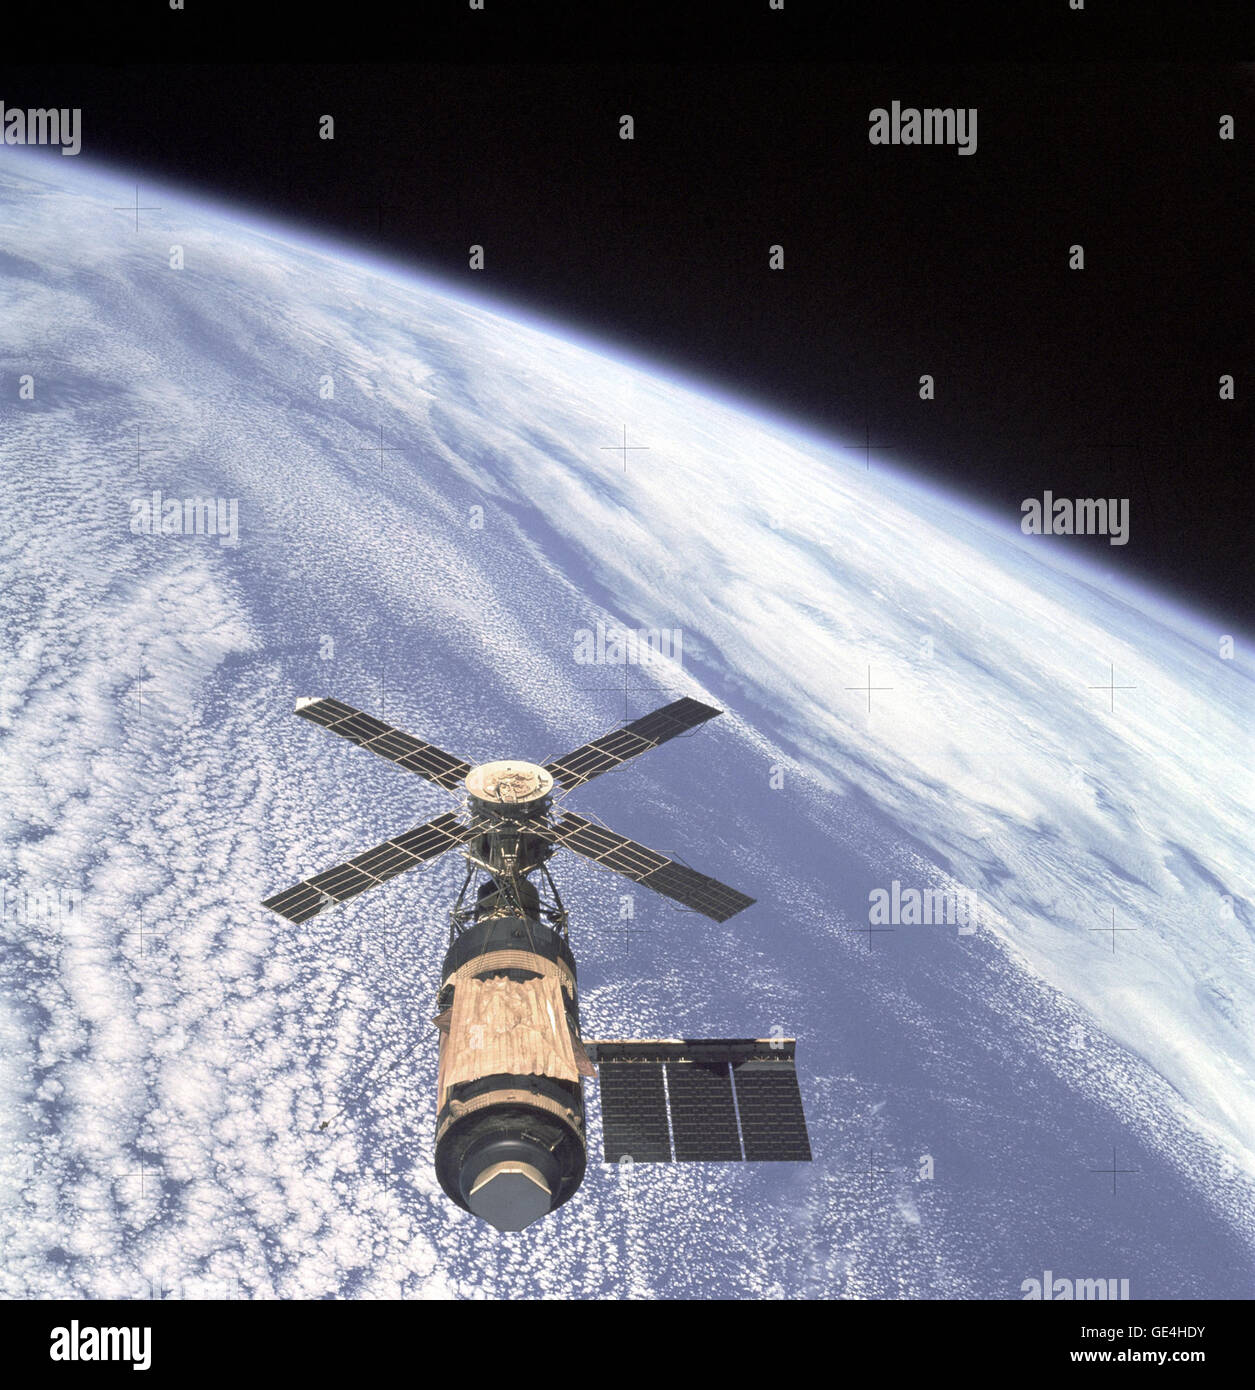 Eine Draufsicht des Skylab Orbital Workshop in Erde umkreisen fotografiert das Skylab 4 Command and Service Module (CSM) während der letzten Rundflug durch die CSM vor der Heimreise. Die Raumstation ist gegen die blasse blaue Erde kontrastiert. Beim Start am 14. Mai 1973 erlebt einige 63 Sekunden in die Flucht, das Micrometeor Schild auf die Orbital Workshop (OWS) einen Fehler, der es erwischt zu werden während des Aufstiegs im Überschall Luftstrom verursacht. Dies das Schild aus den OWS gerissen und beschädigt die Verzurren, die eines der solar Array-Systeme gesichert. Vollständigen Verlust eines der sol Stockfoto